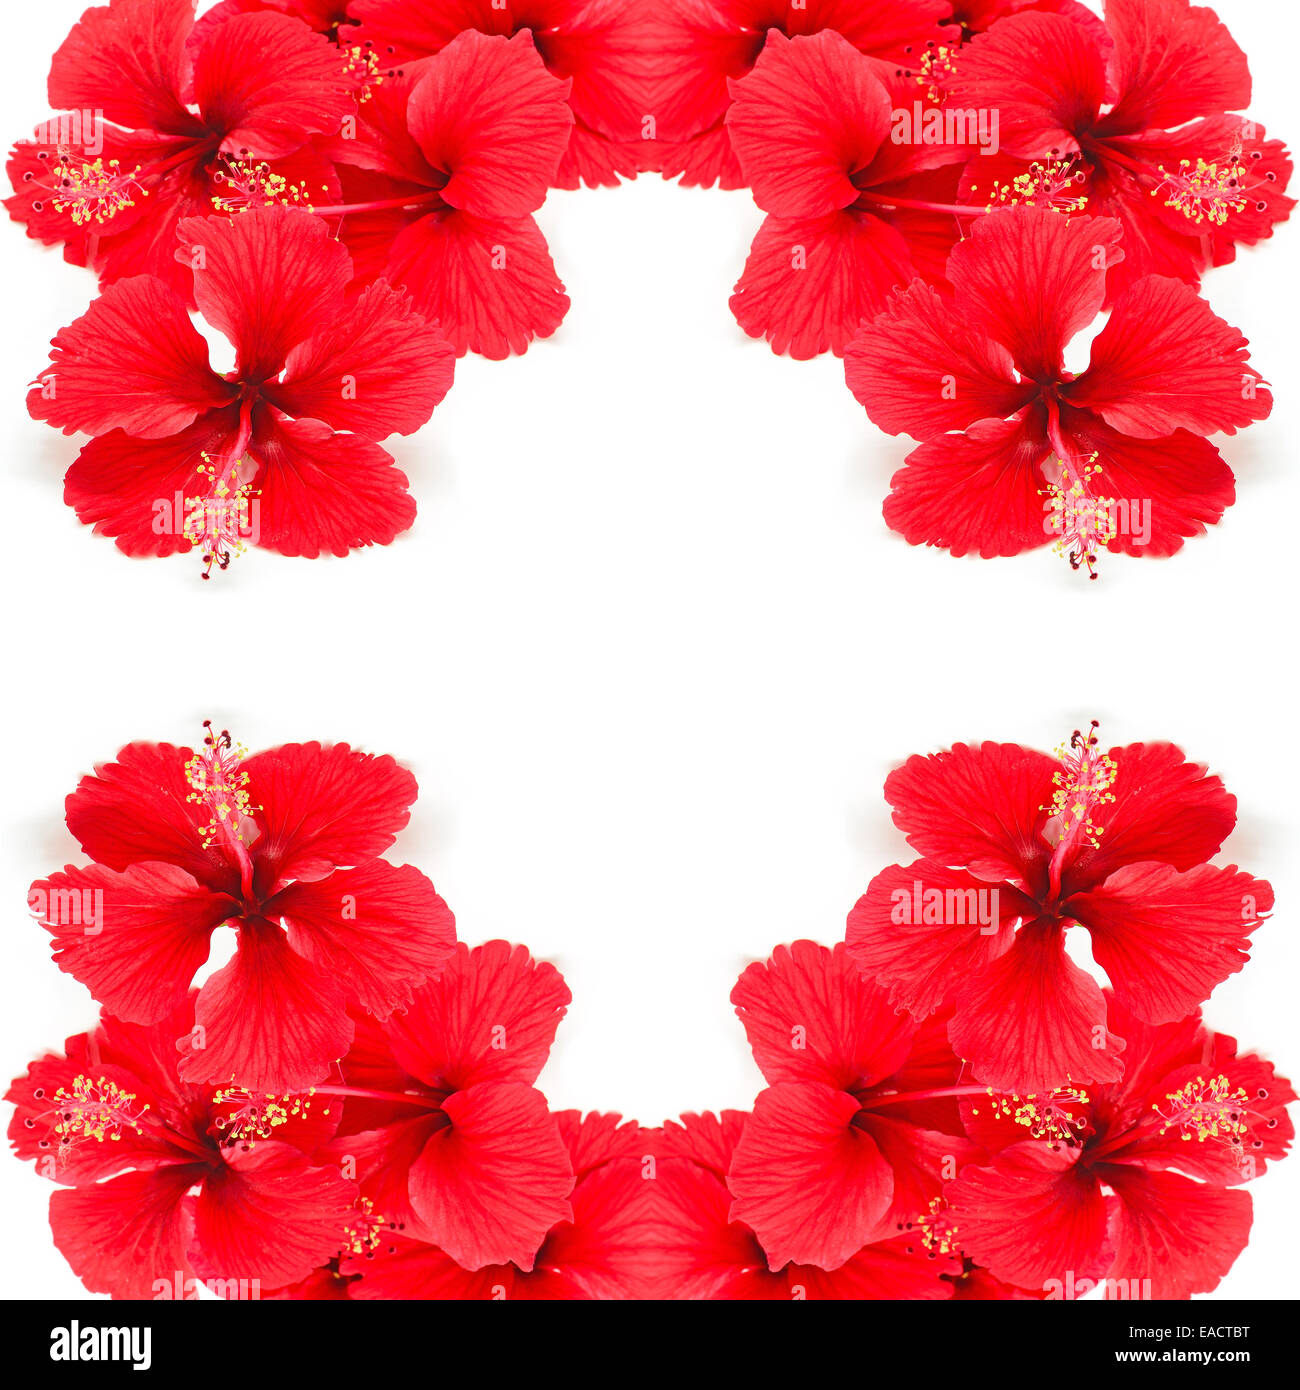 Belle fleur d'Hibiscus rouge isolé sur fond blanc Banque D'Images